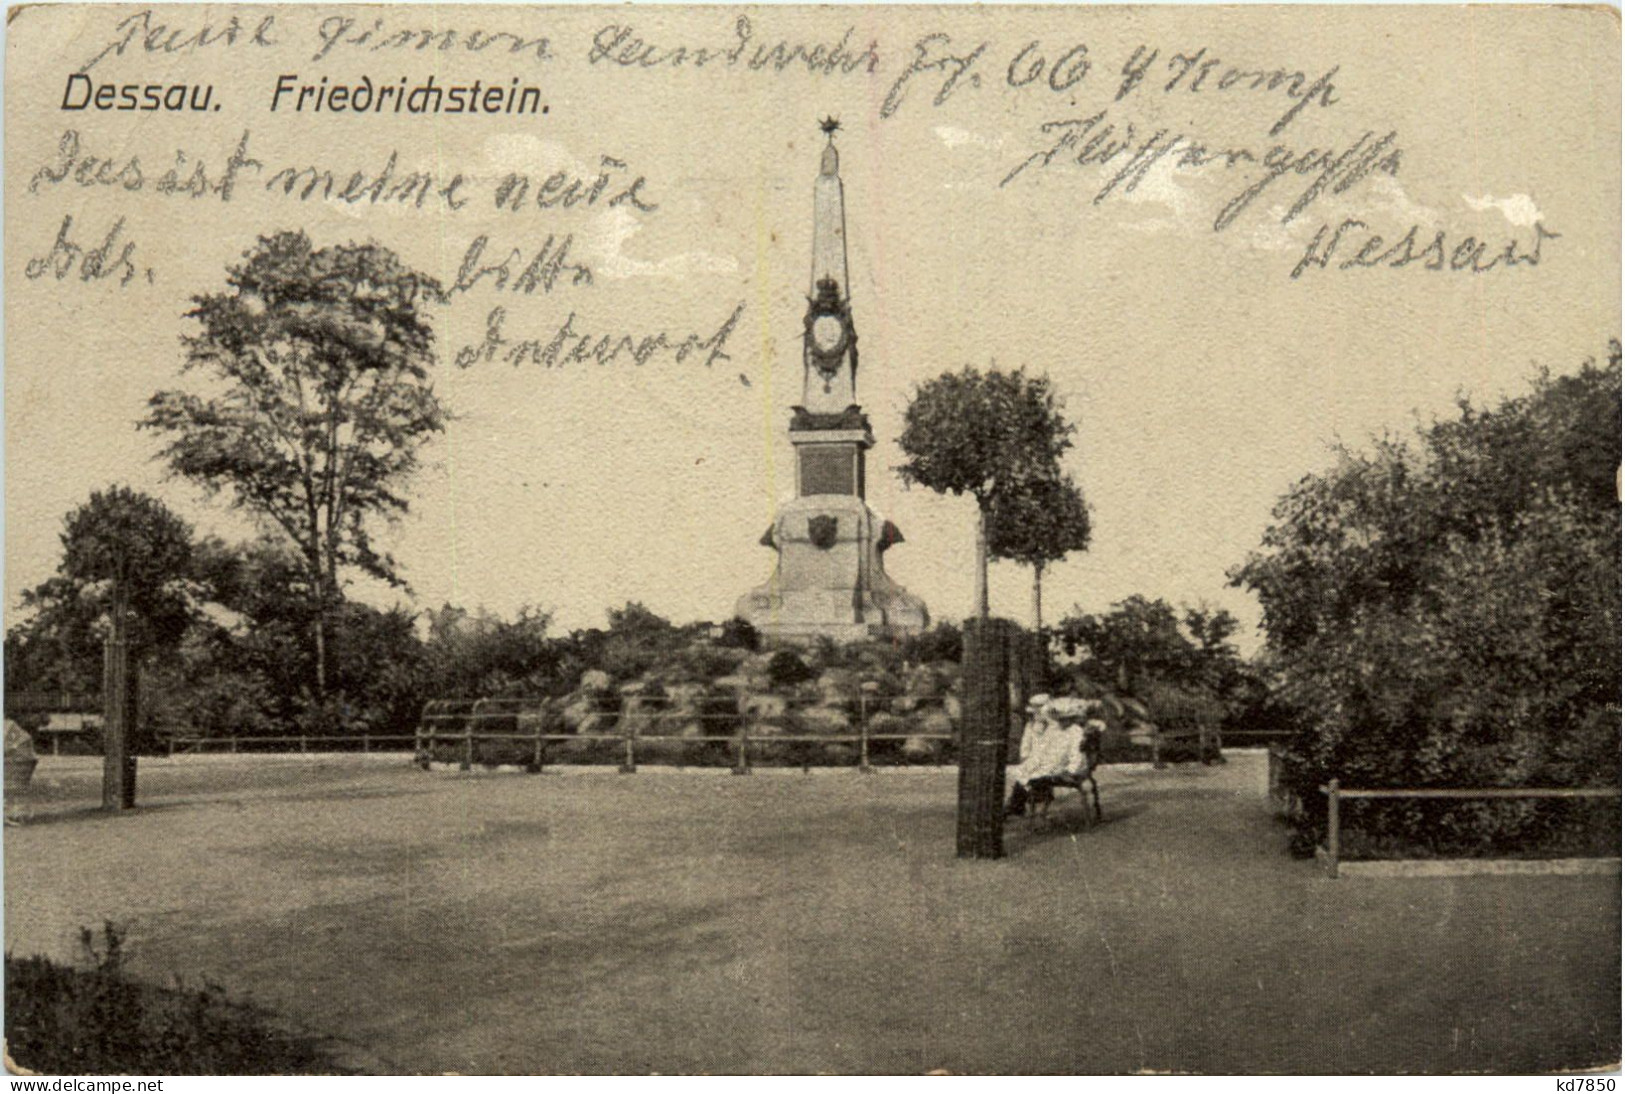 Dessau - Friedrichstein - Dessau